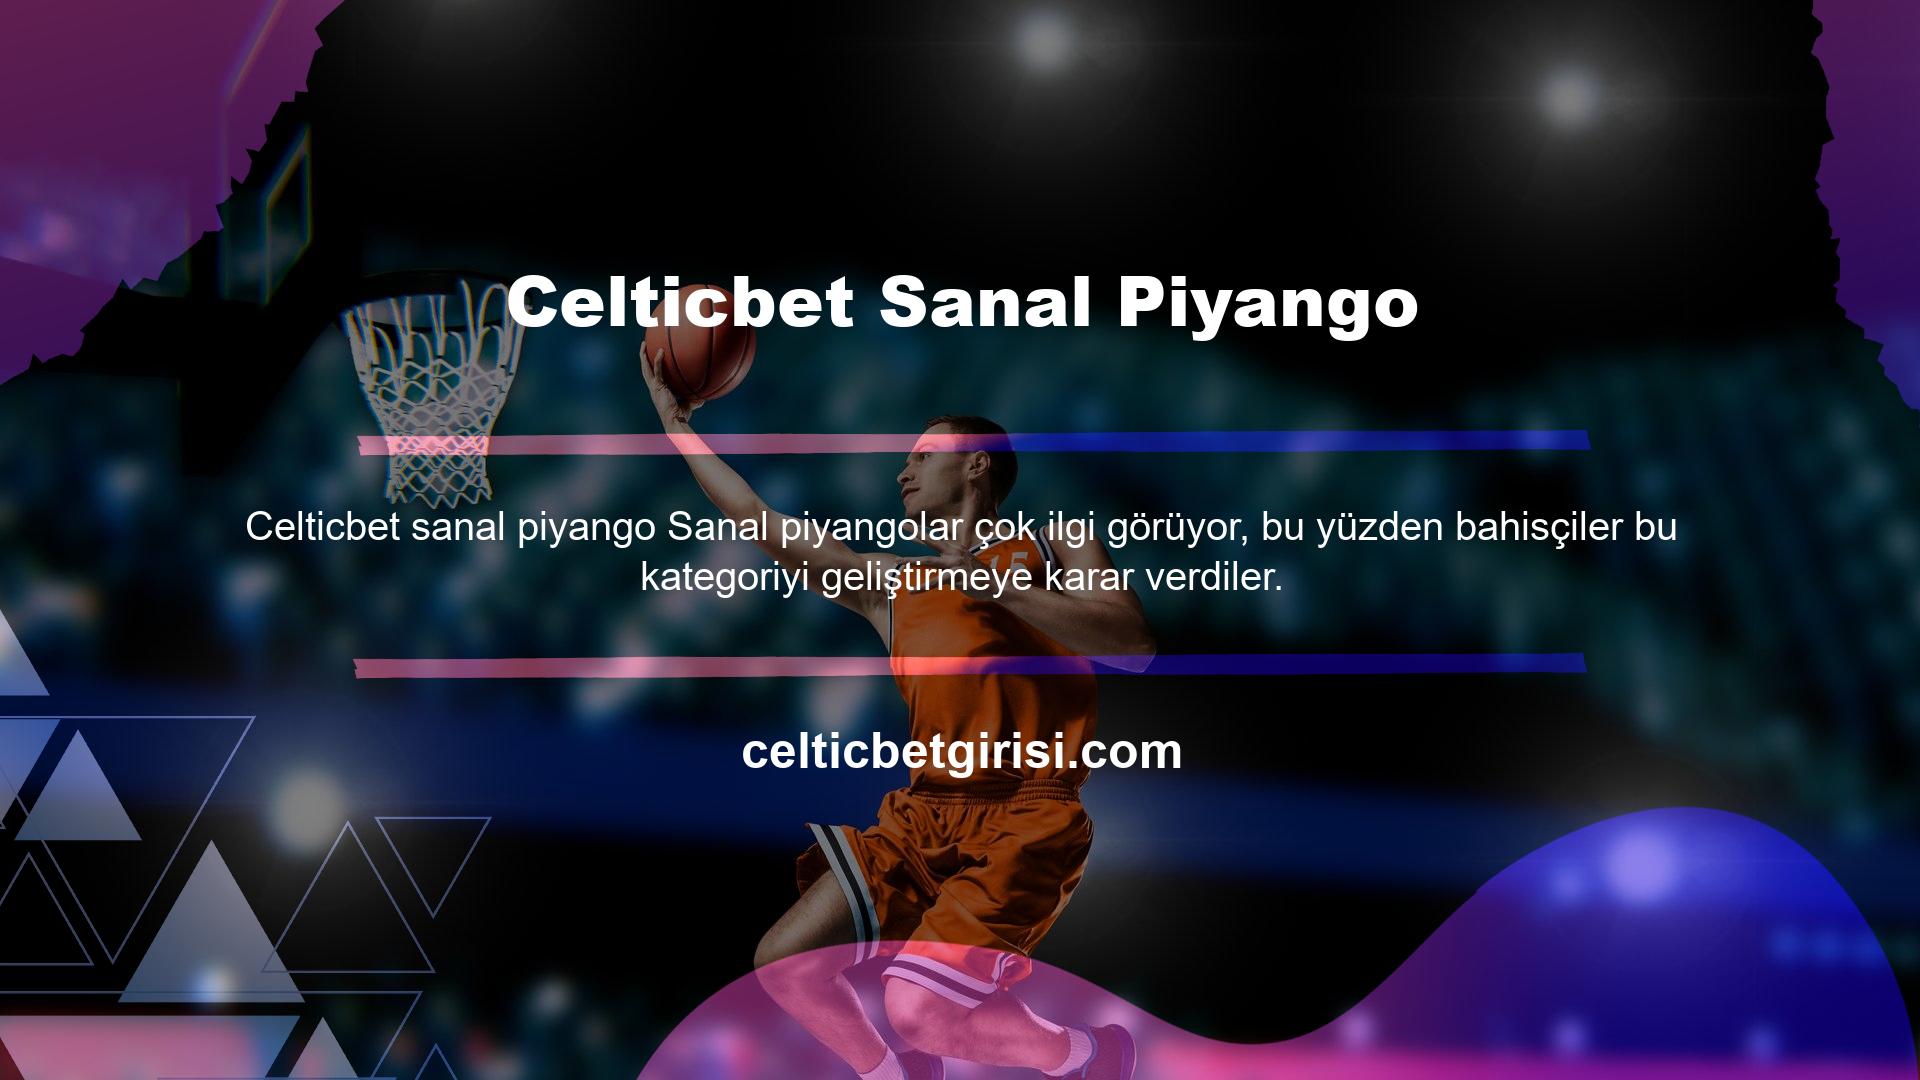 Celticbet sanal piyango kategorisine bir göz atın ve bu teklifin ne kadar zengin ve kapsamlı olduğunu göreceksiniz